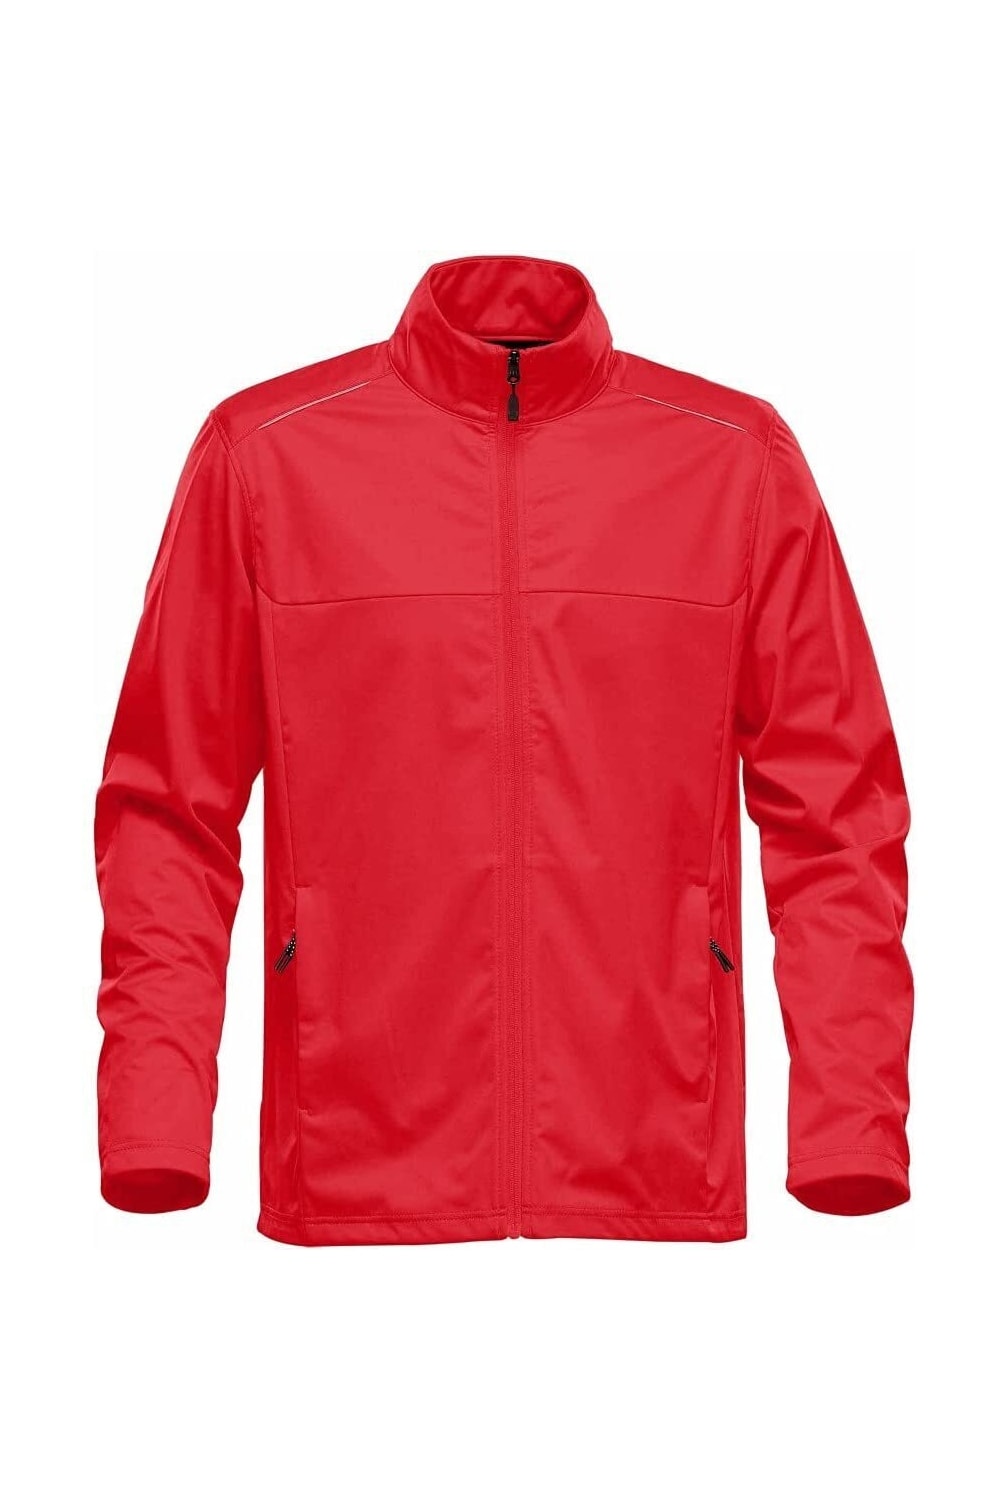 Stormtech Mens Greenwich Lightweight Soft Shell Jacket (Bright Red)